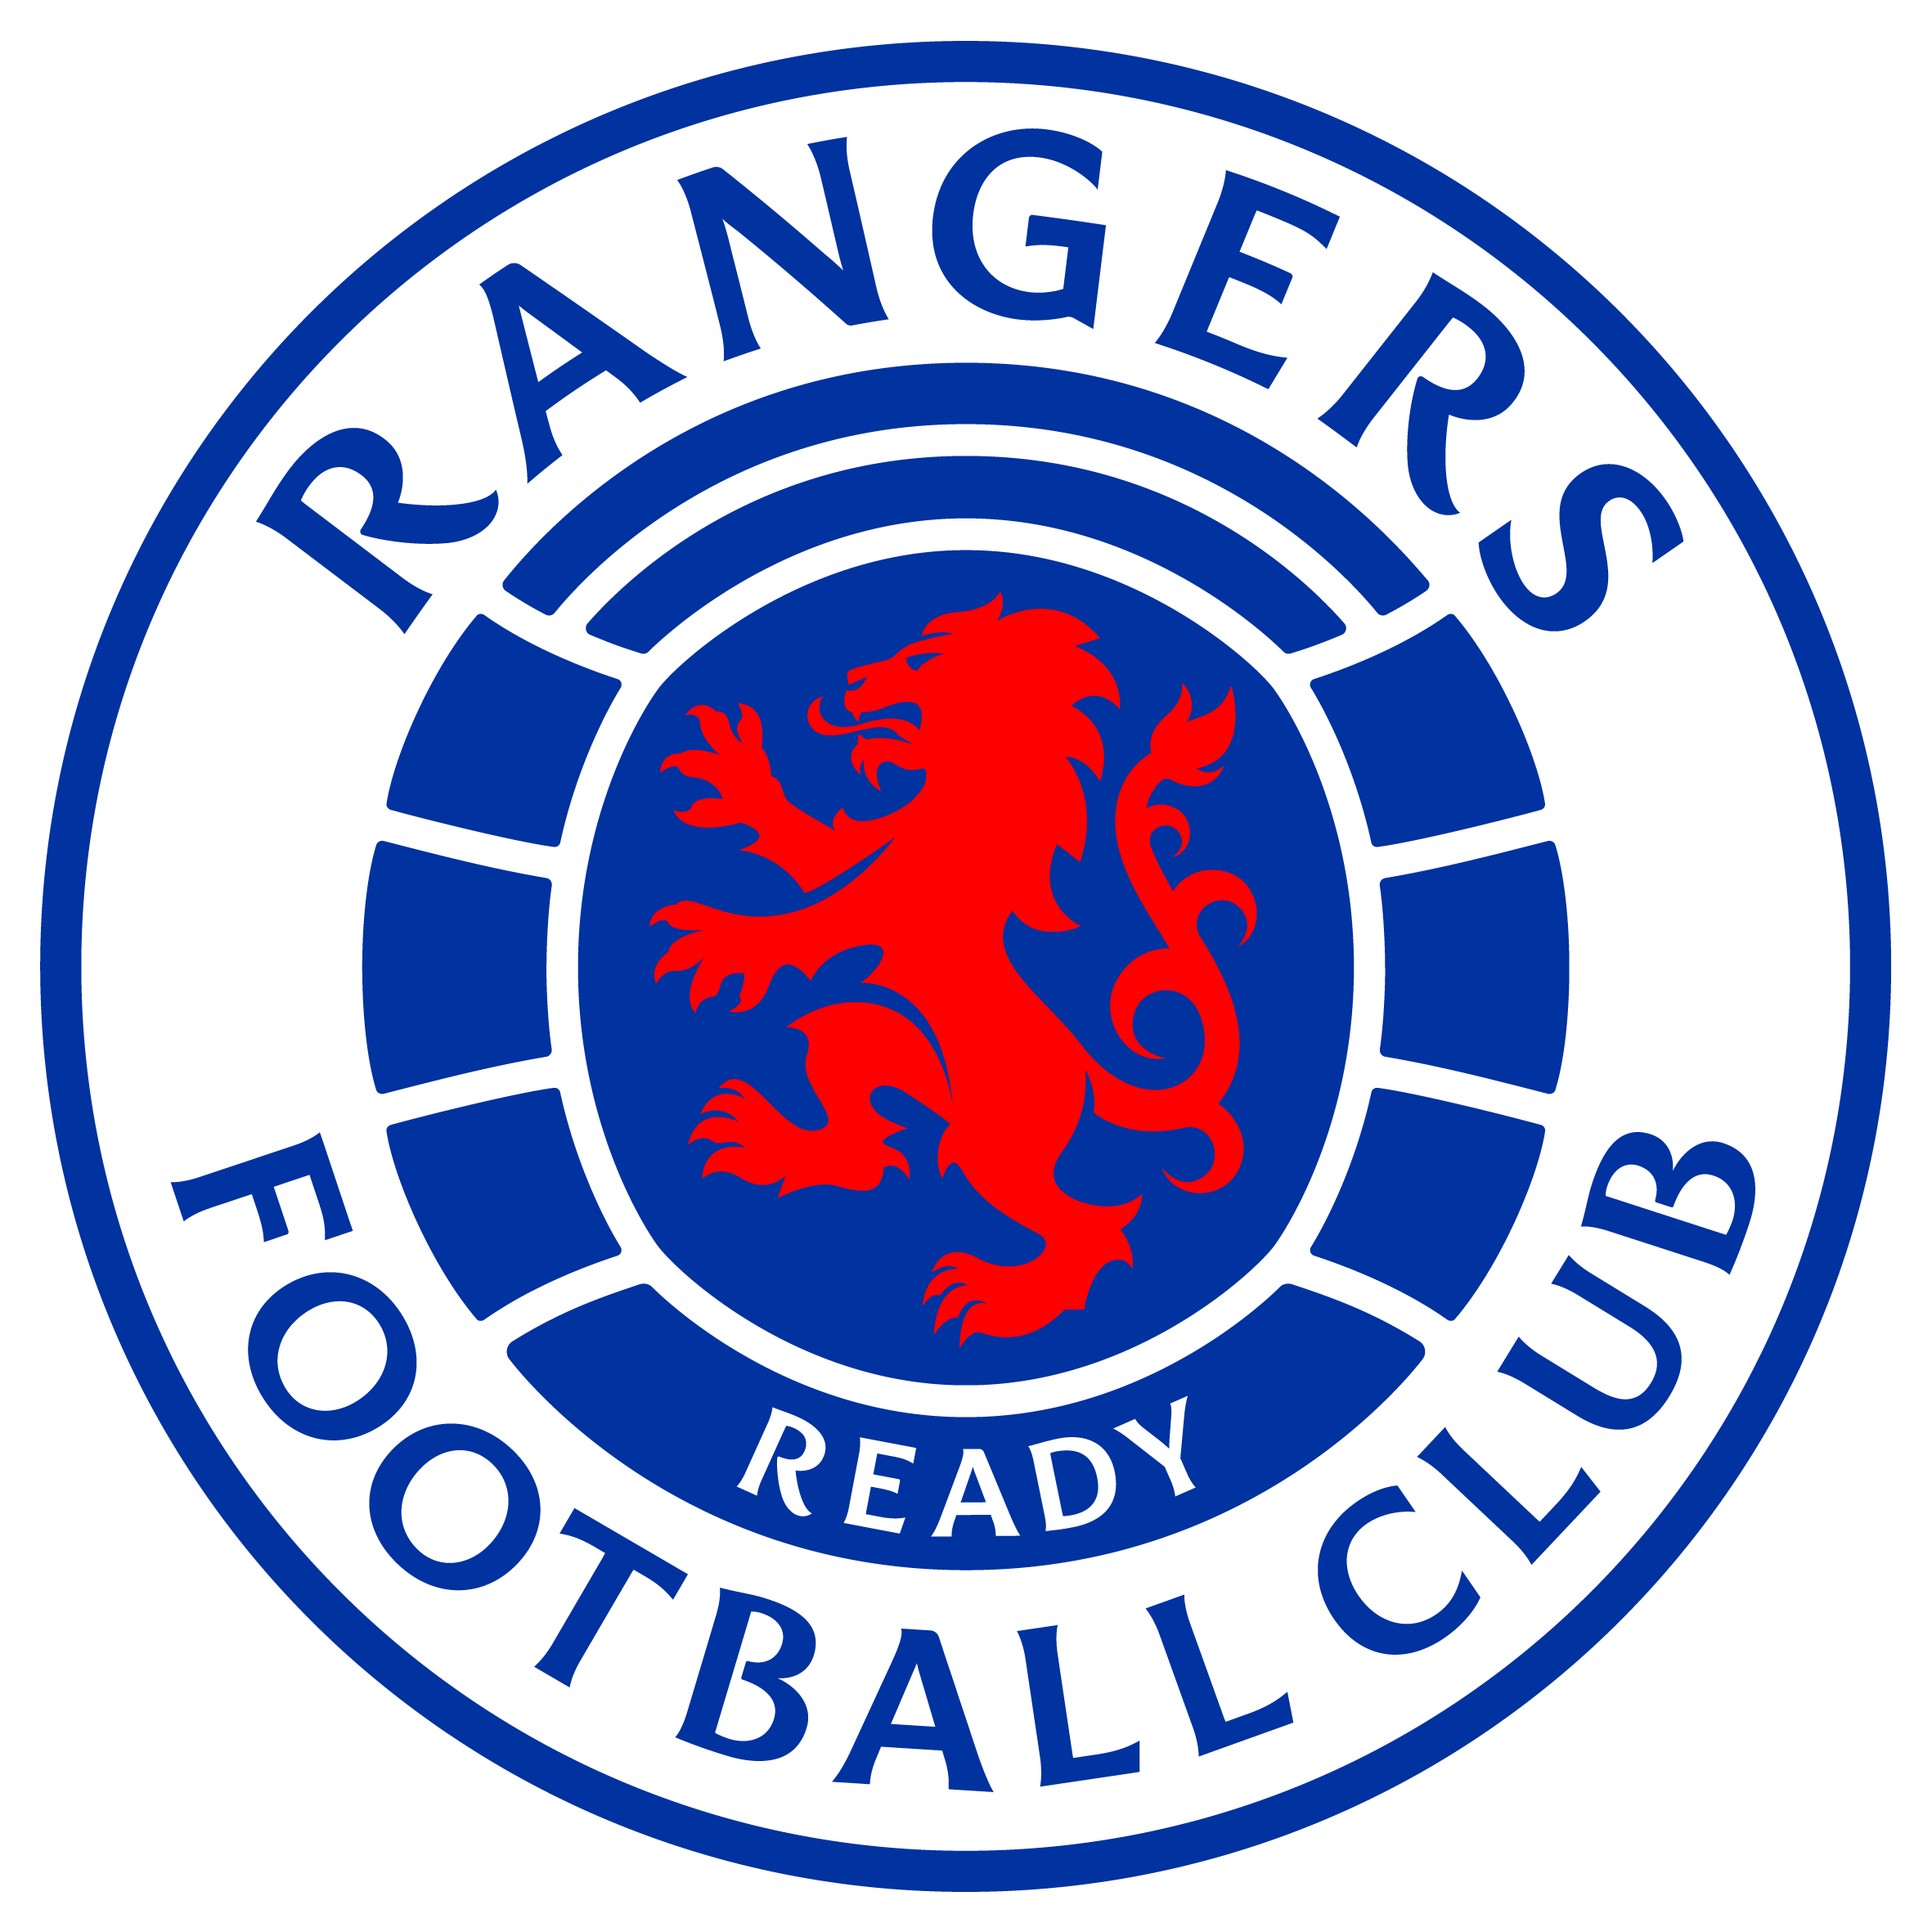 Rangers v Aberdeen